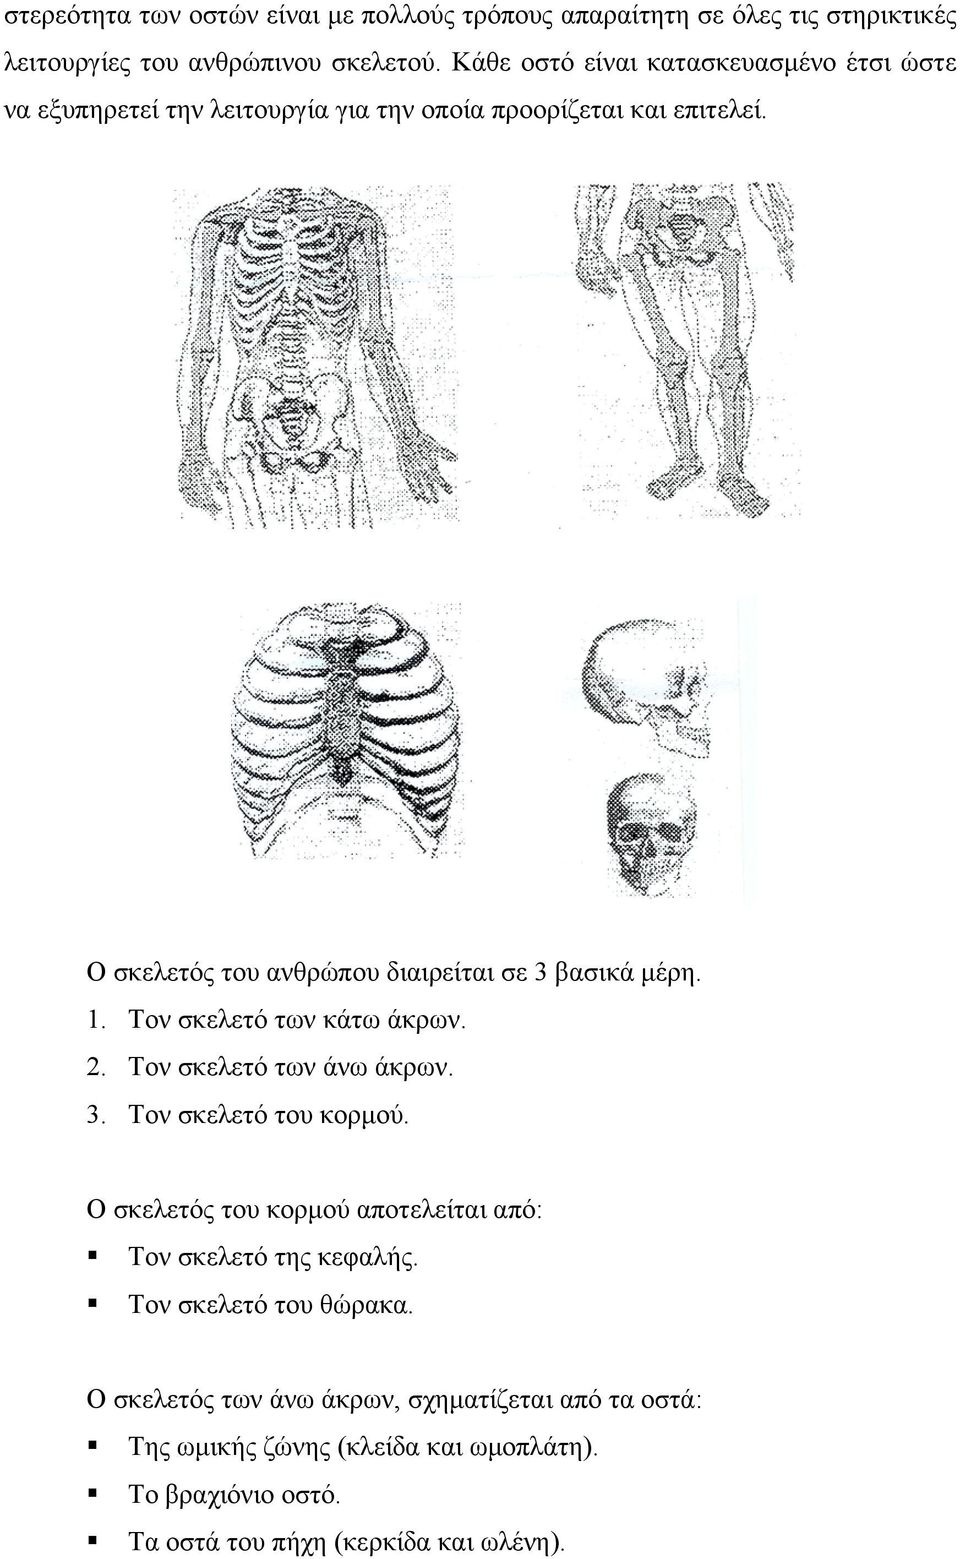 Ο σκελετός του ανθρώπου διαιρείται σε 3 βασικά μέρη. 1. Τον σκελετό των κάτω άκρων. 2. Τον σκελετό των άνω άκρων. 3. Τον σκελετό του κορμού.